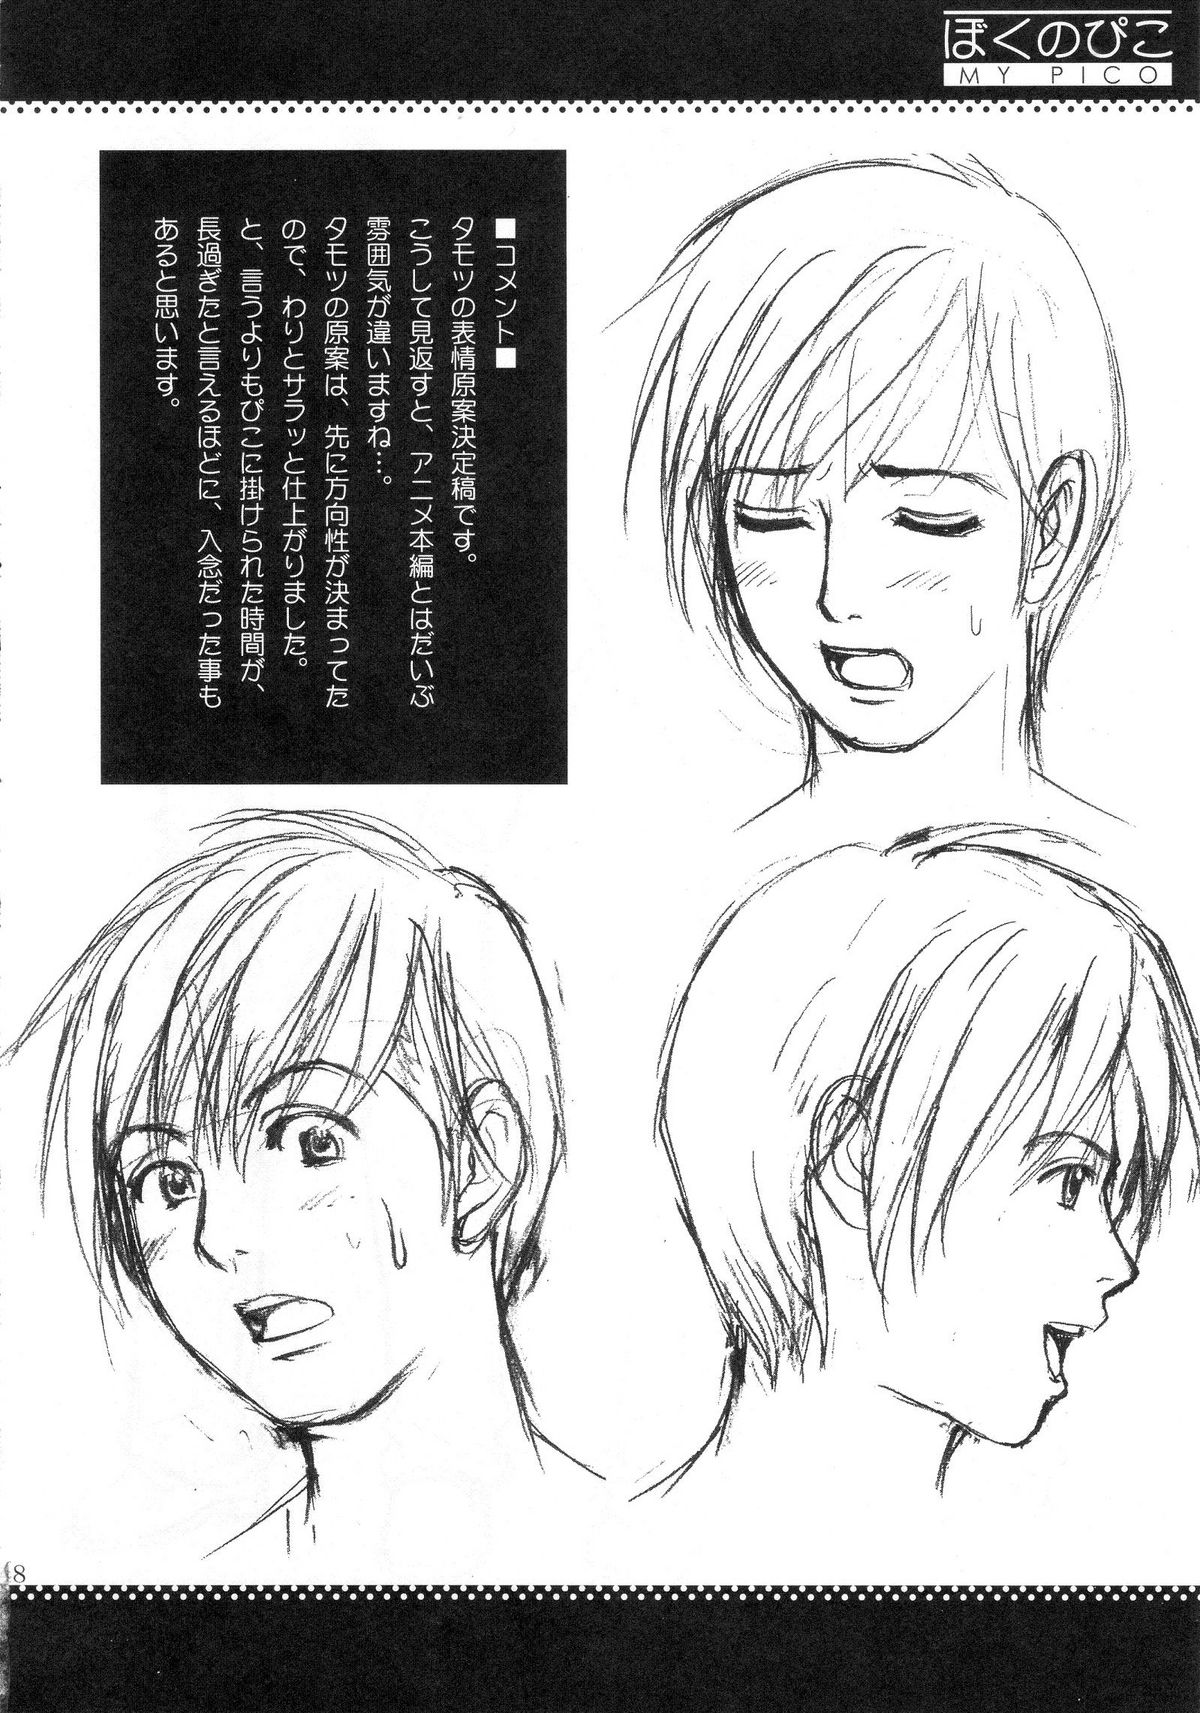 (COMIC1) [Saigado] Boku no Pico Comic + Koushiki Character Genanshuu (Boku no Pico) page 46 full